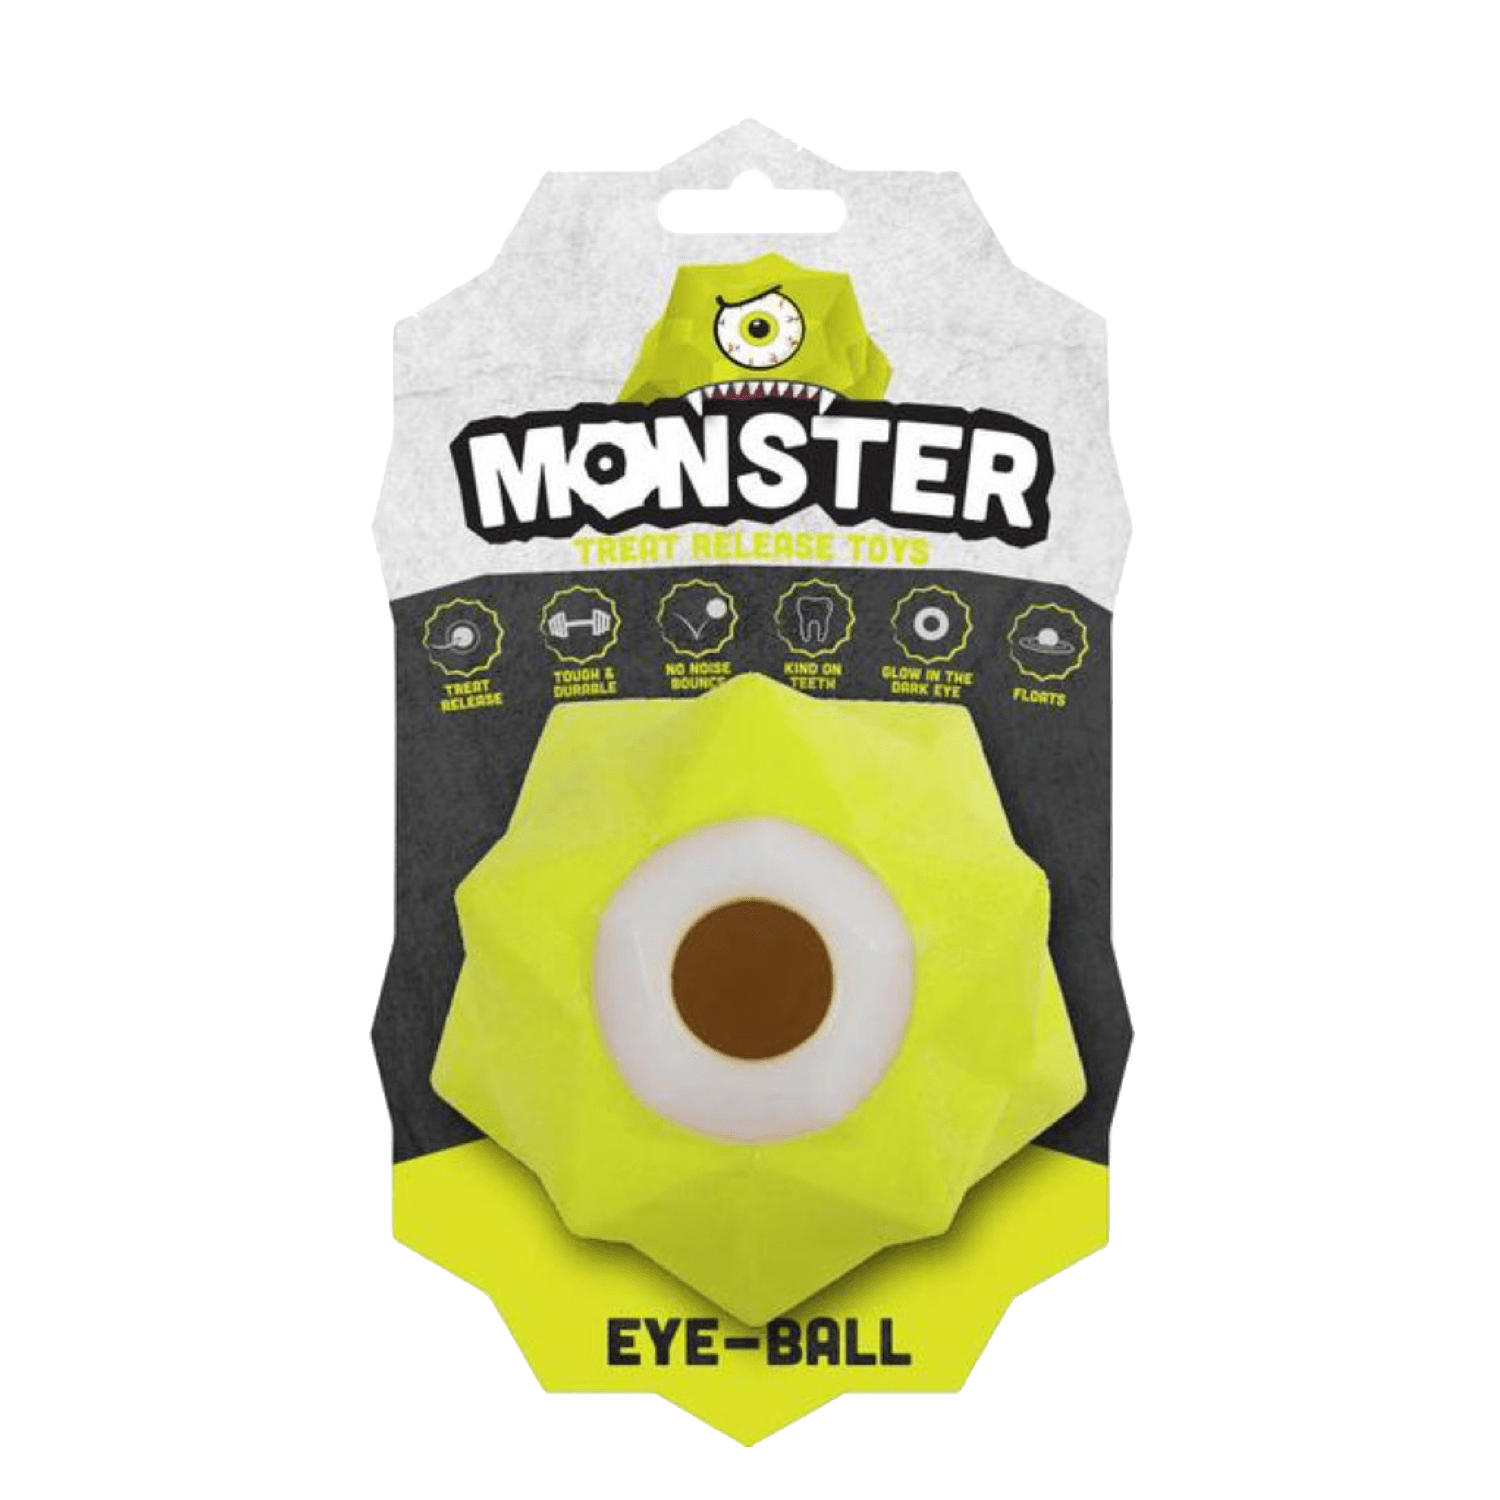 Aussie Dog - Monster Treat Toy Eyeballs - Petzyo